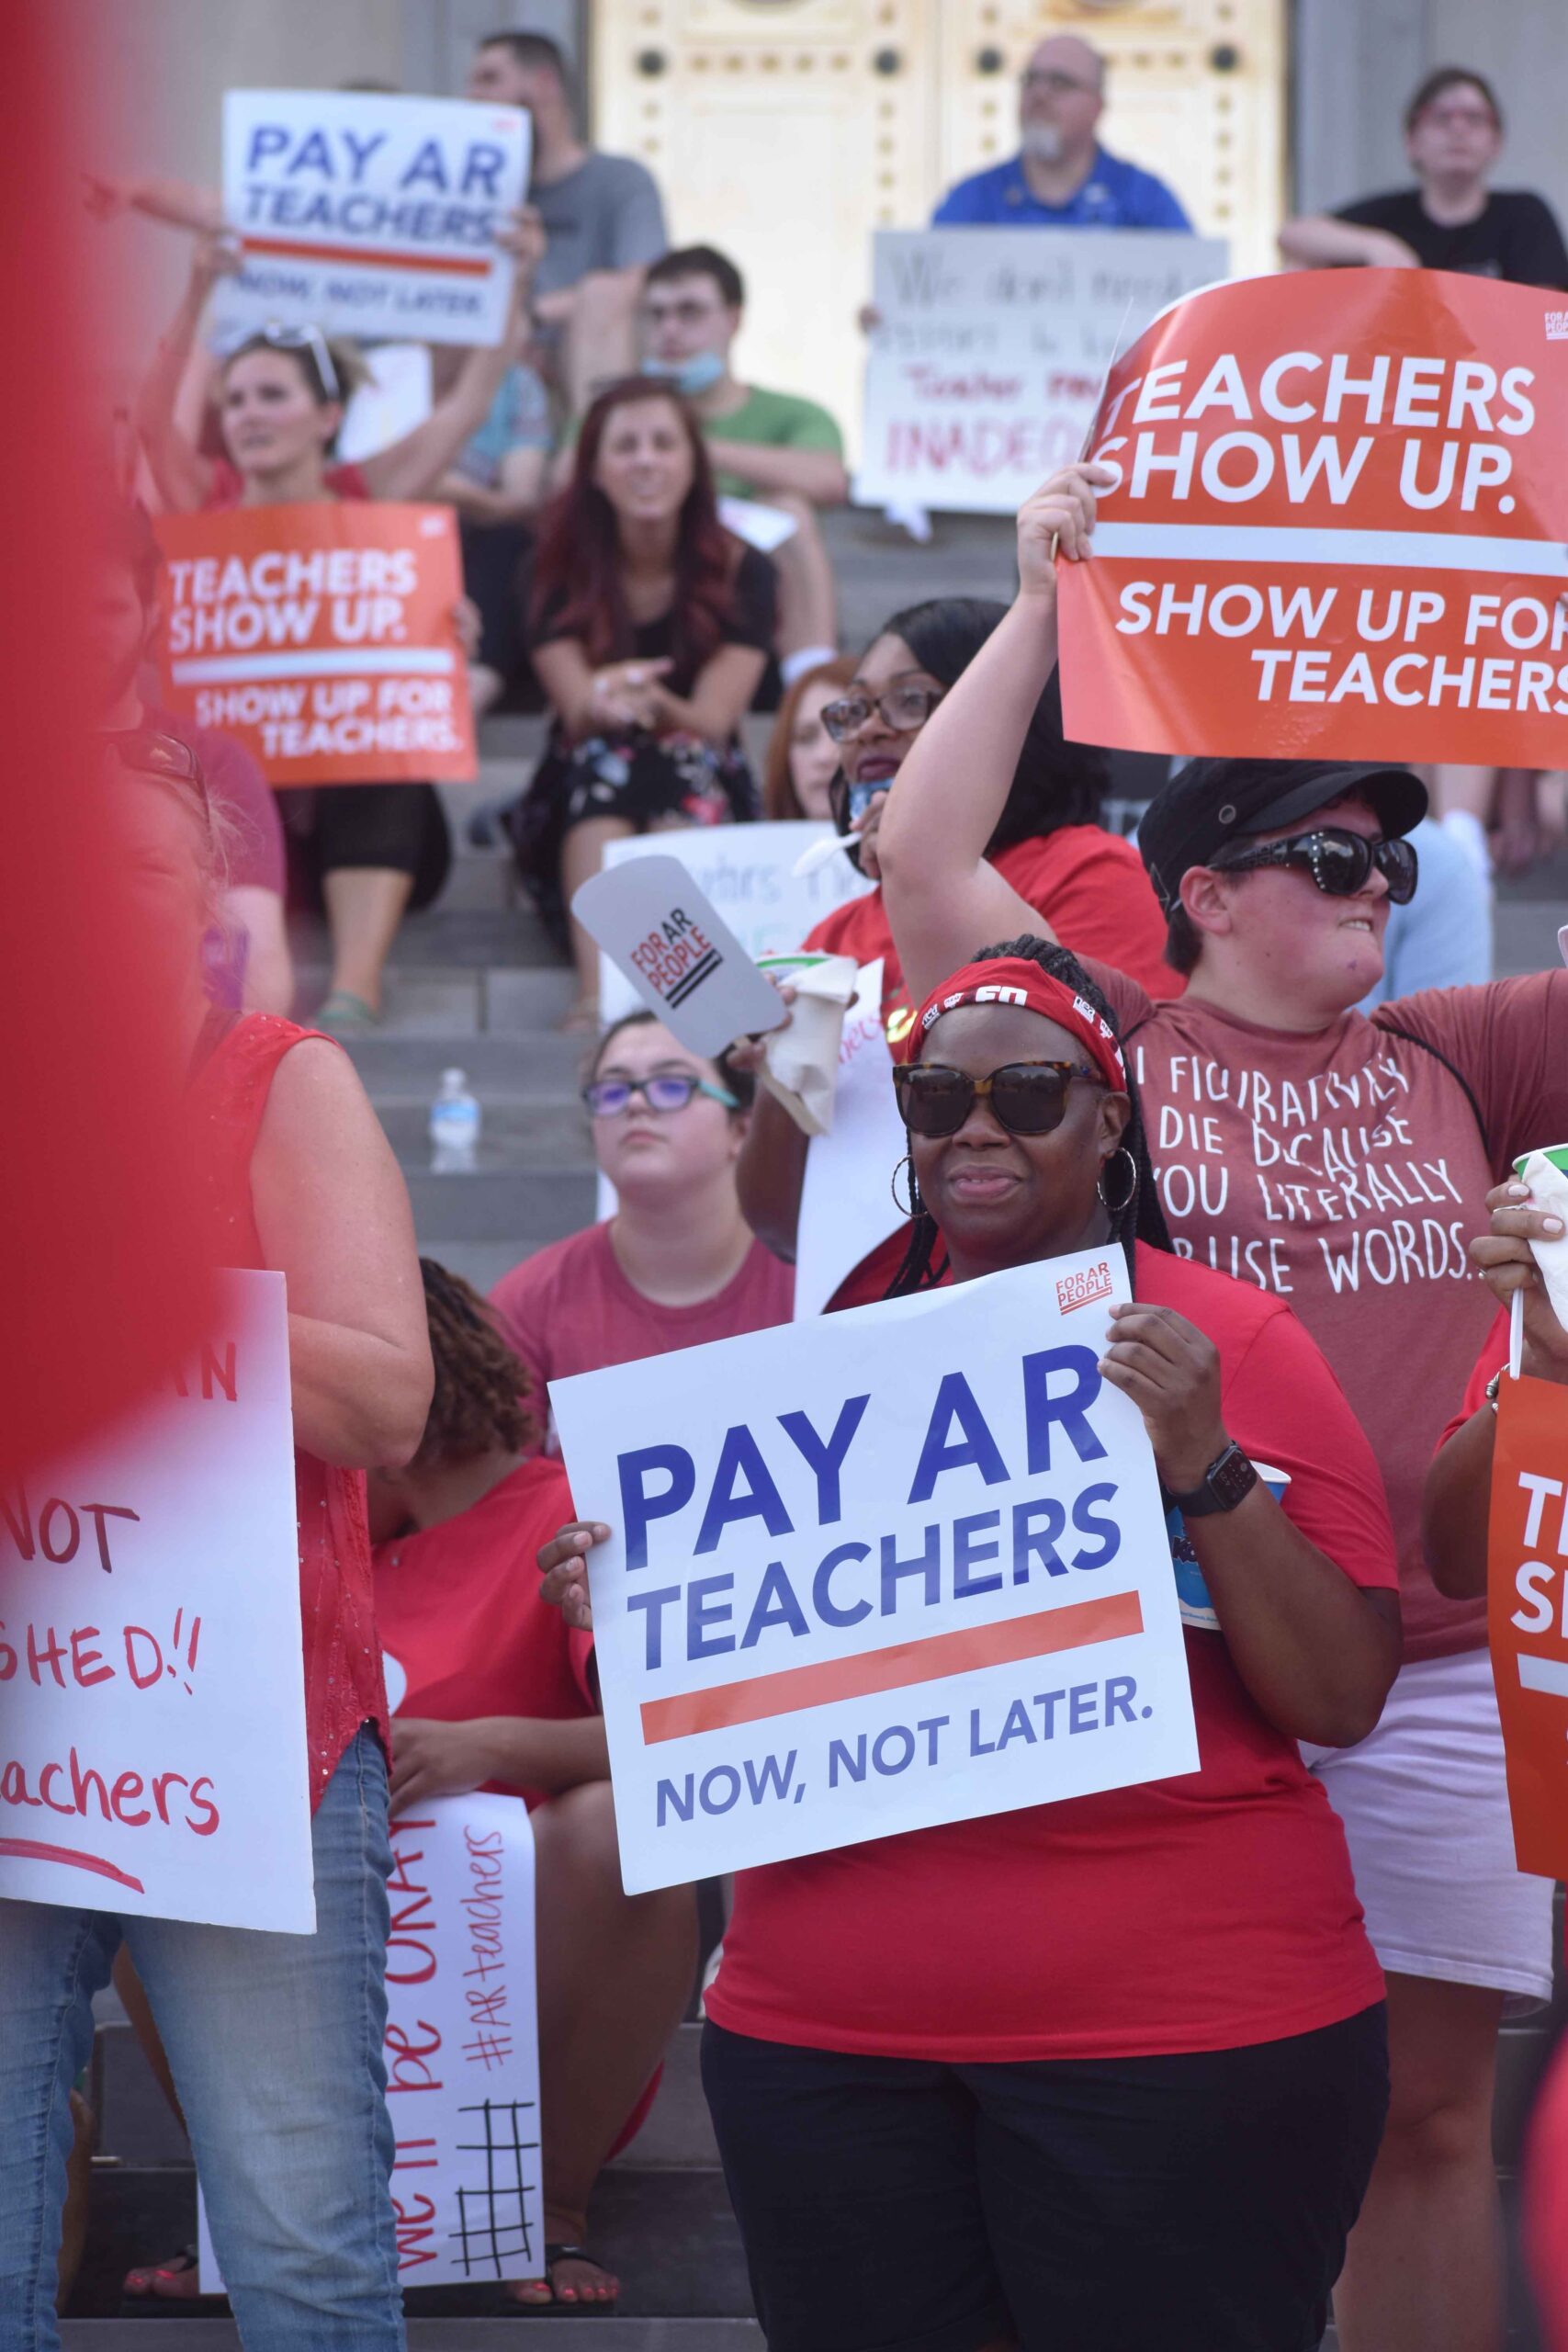 Pay AR Teachers